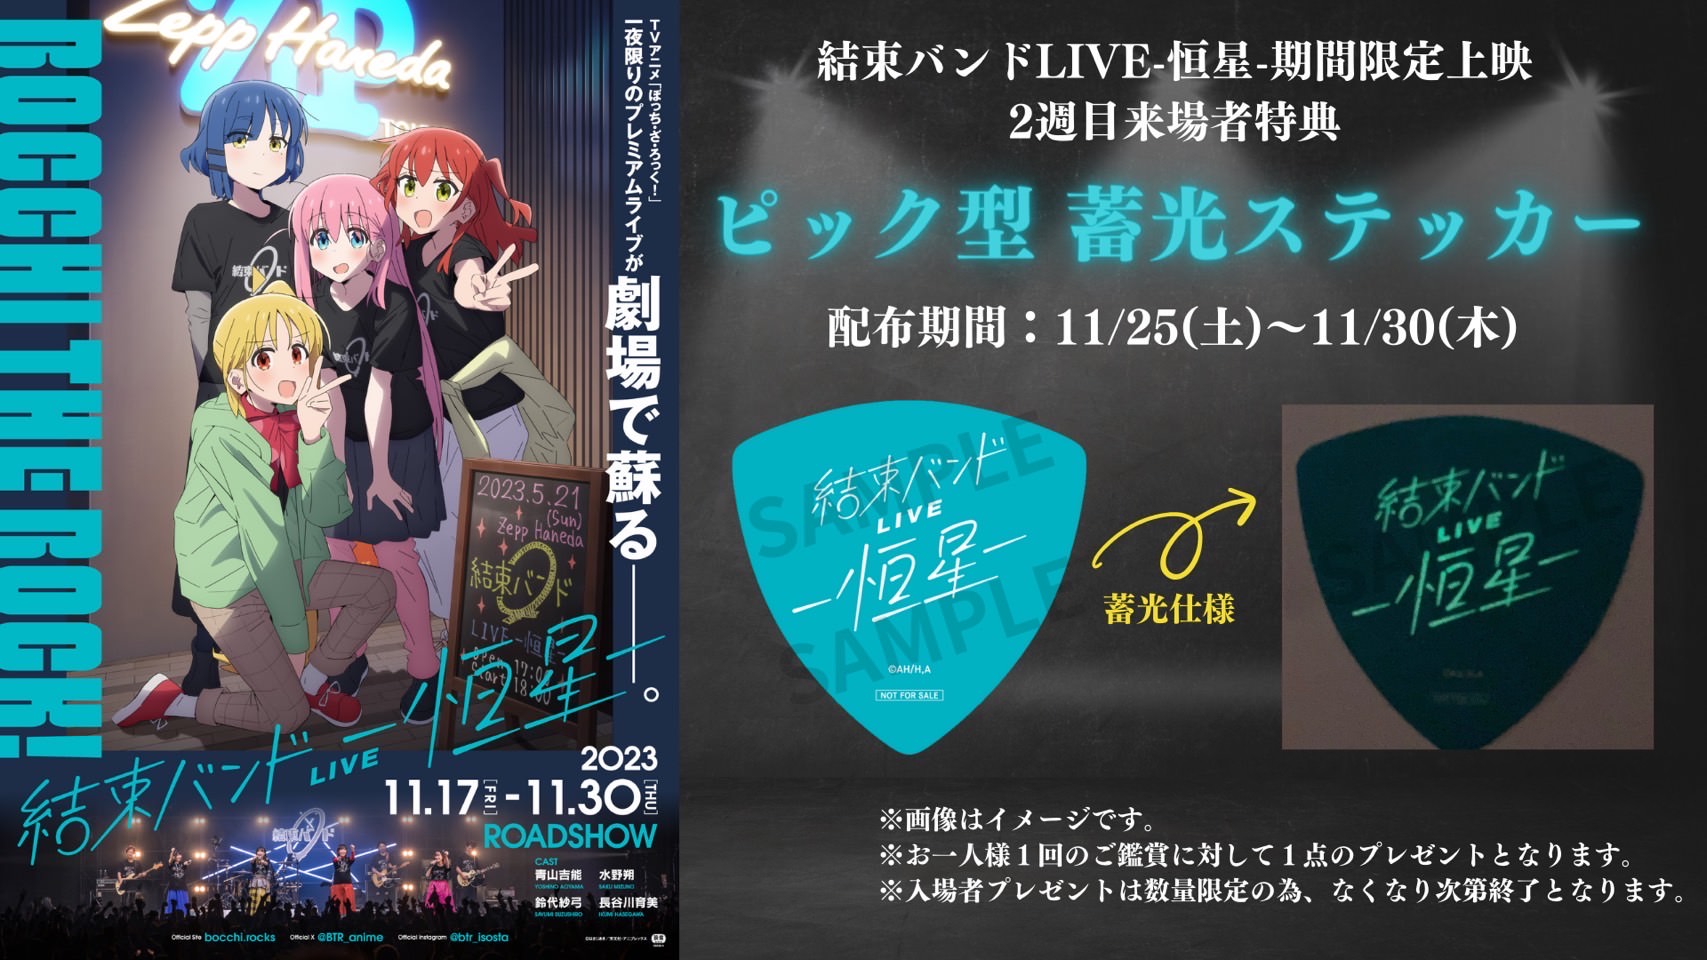 ぼざろ“結束バンド LIVE 上映” 11月25日よりピック型 蓄光ステッカー配布!